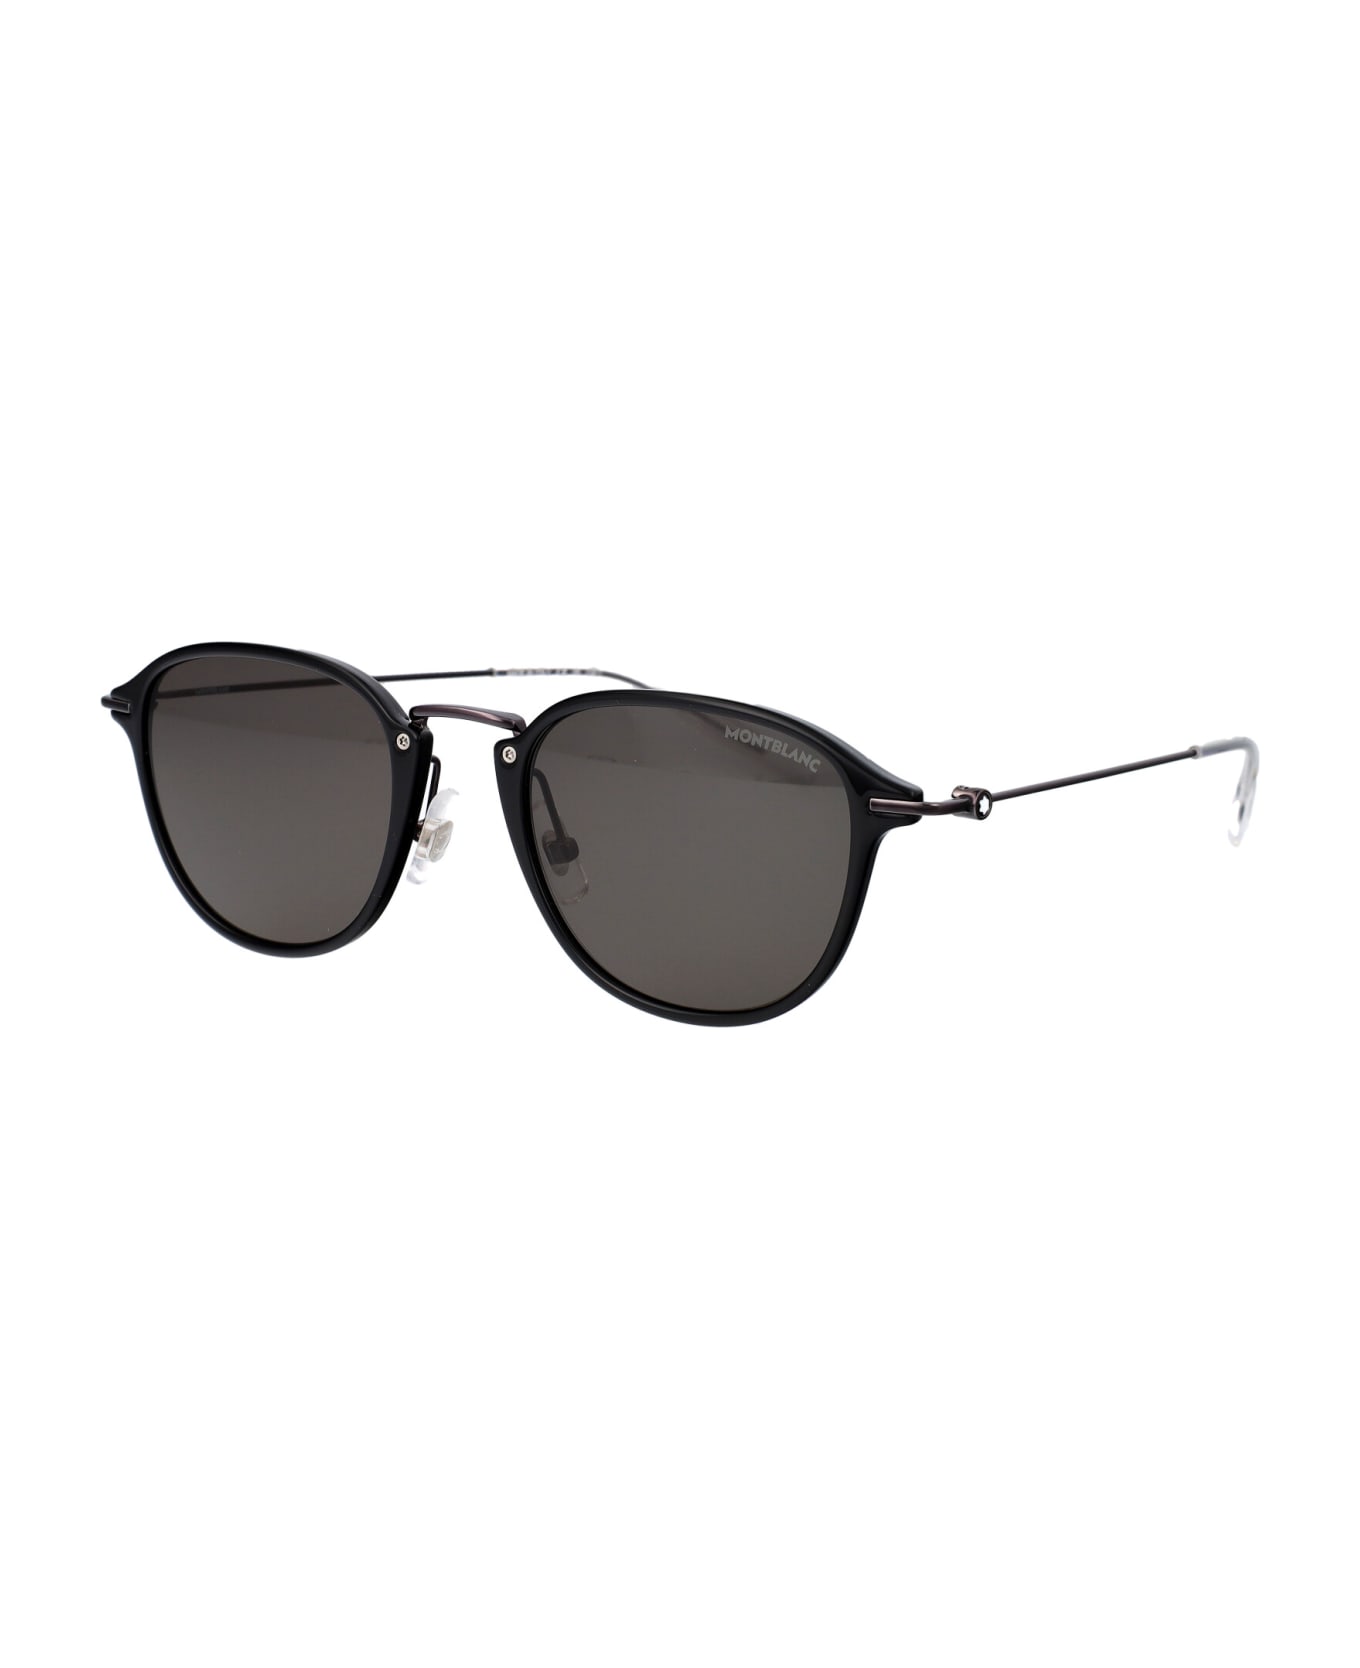 Montblanc Mb0155s Sunglasses - 008 BLACK RUTHENIUM GREY